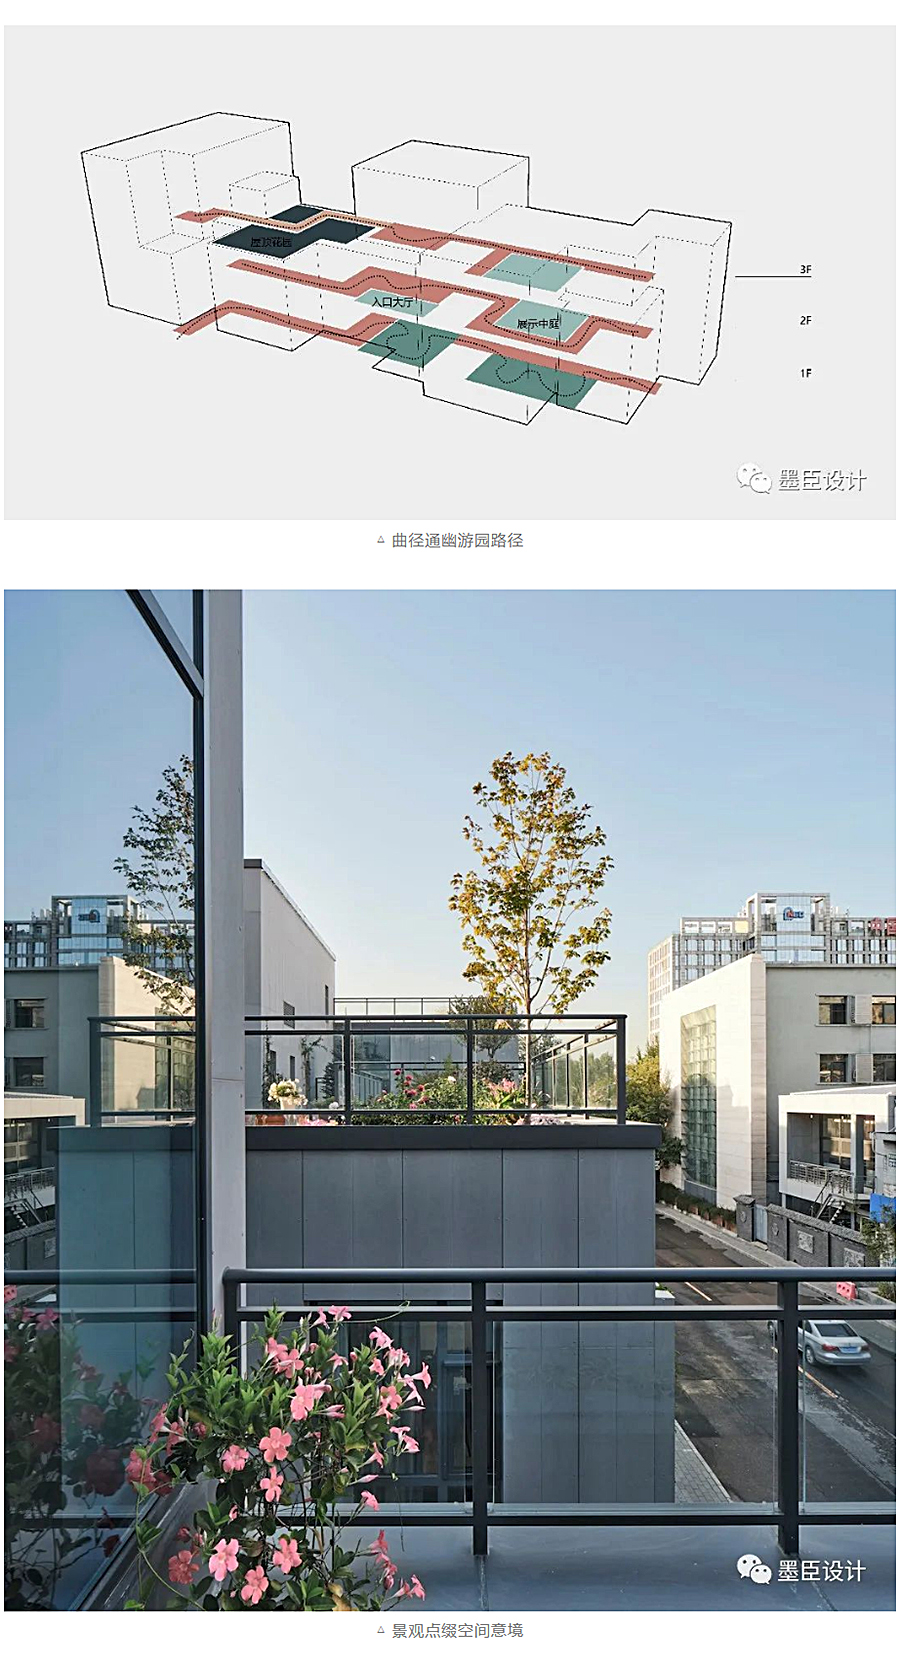 生态办公的游园序列-_-北京花木公司办公楼改造_0011_图层-12.jpg